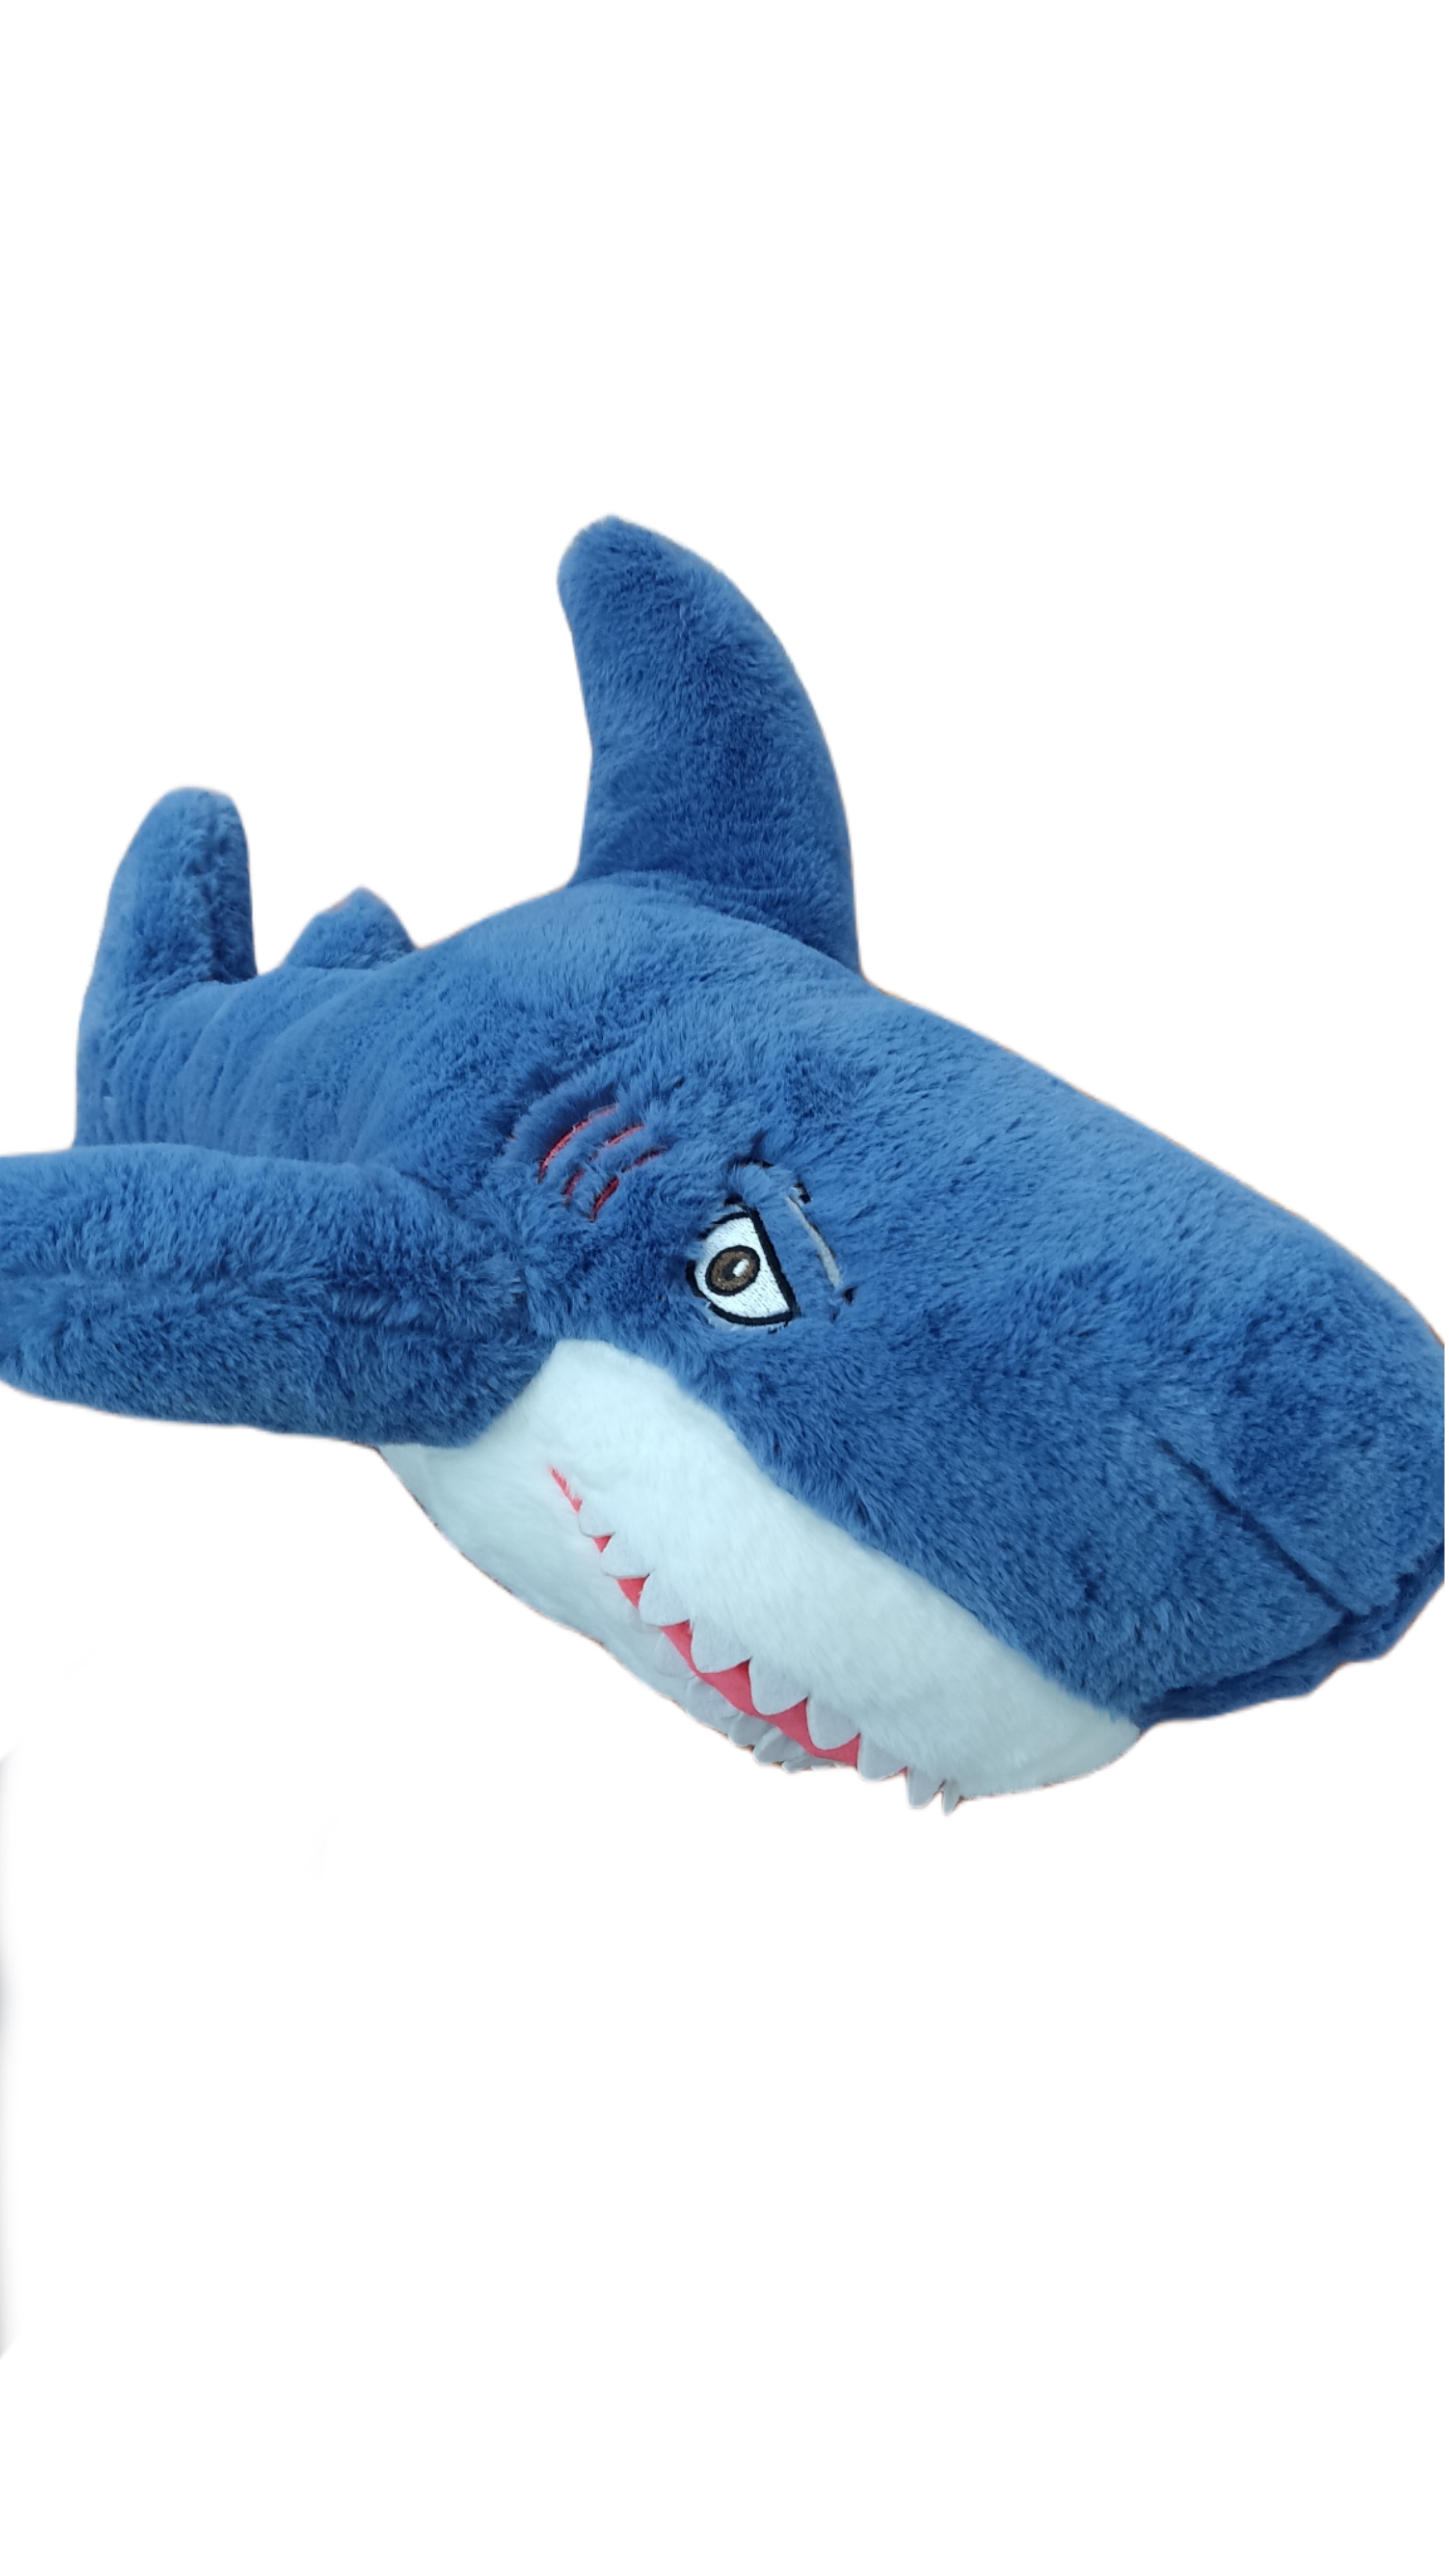 Мягкая игрушка Акула 50см (Вид 1)